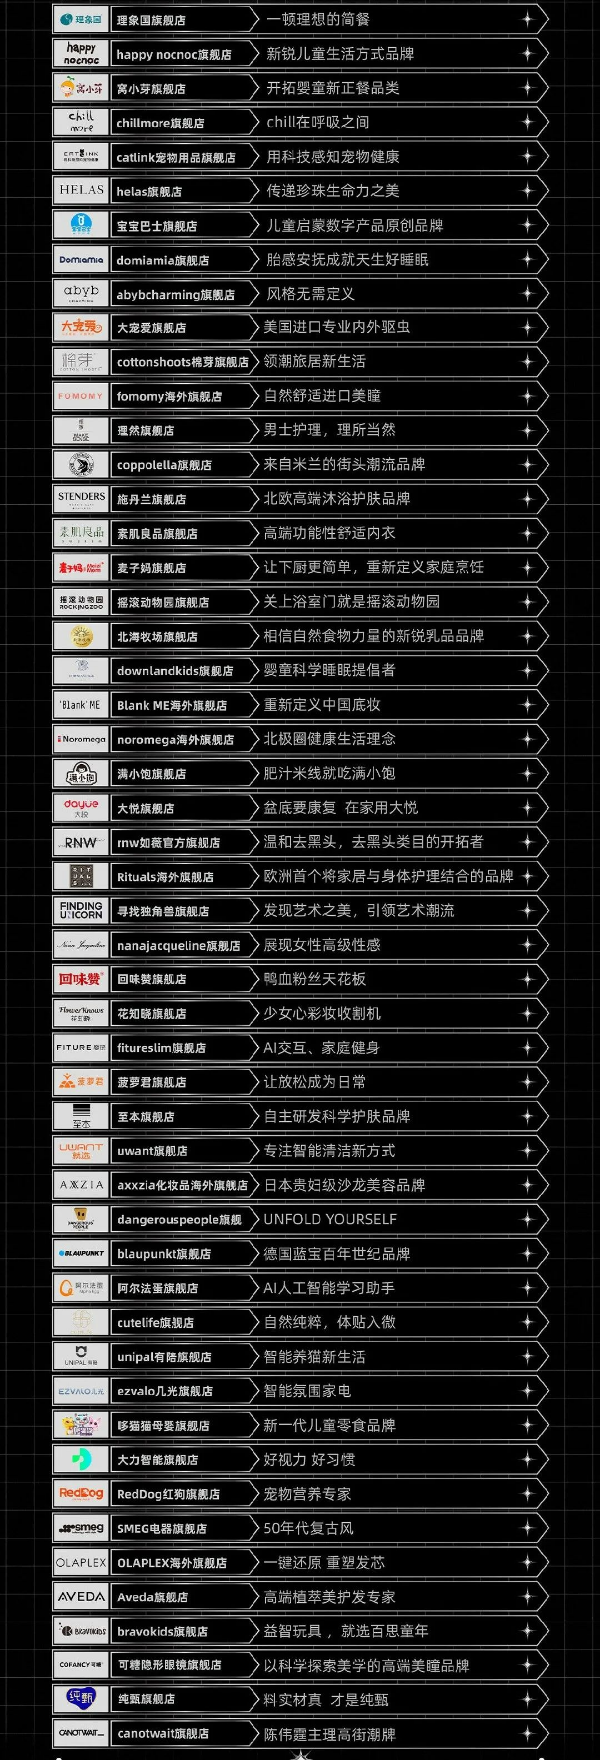 “天猫宝藏新品牌”年终盘点榜单